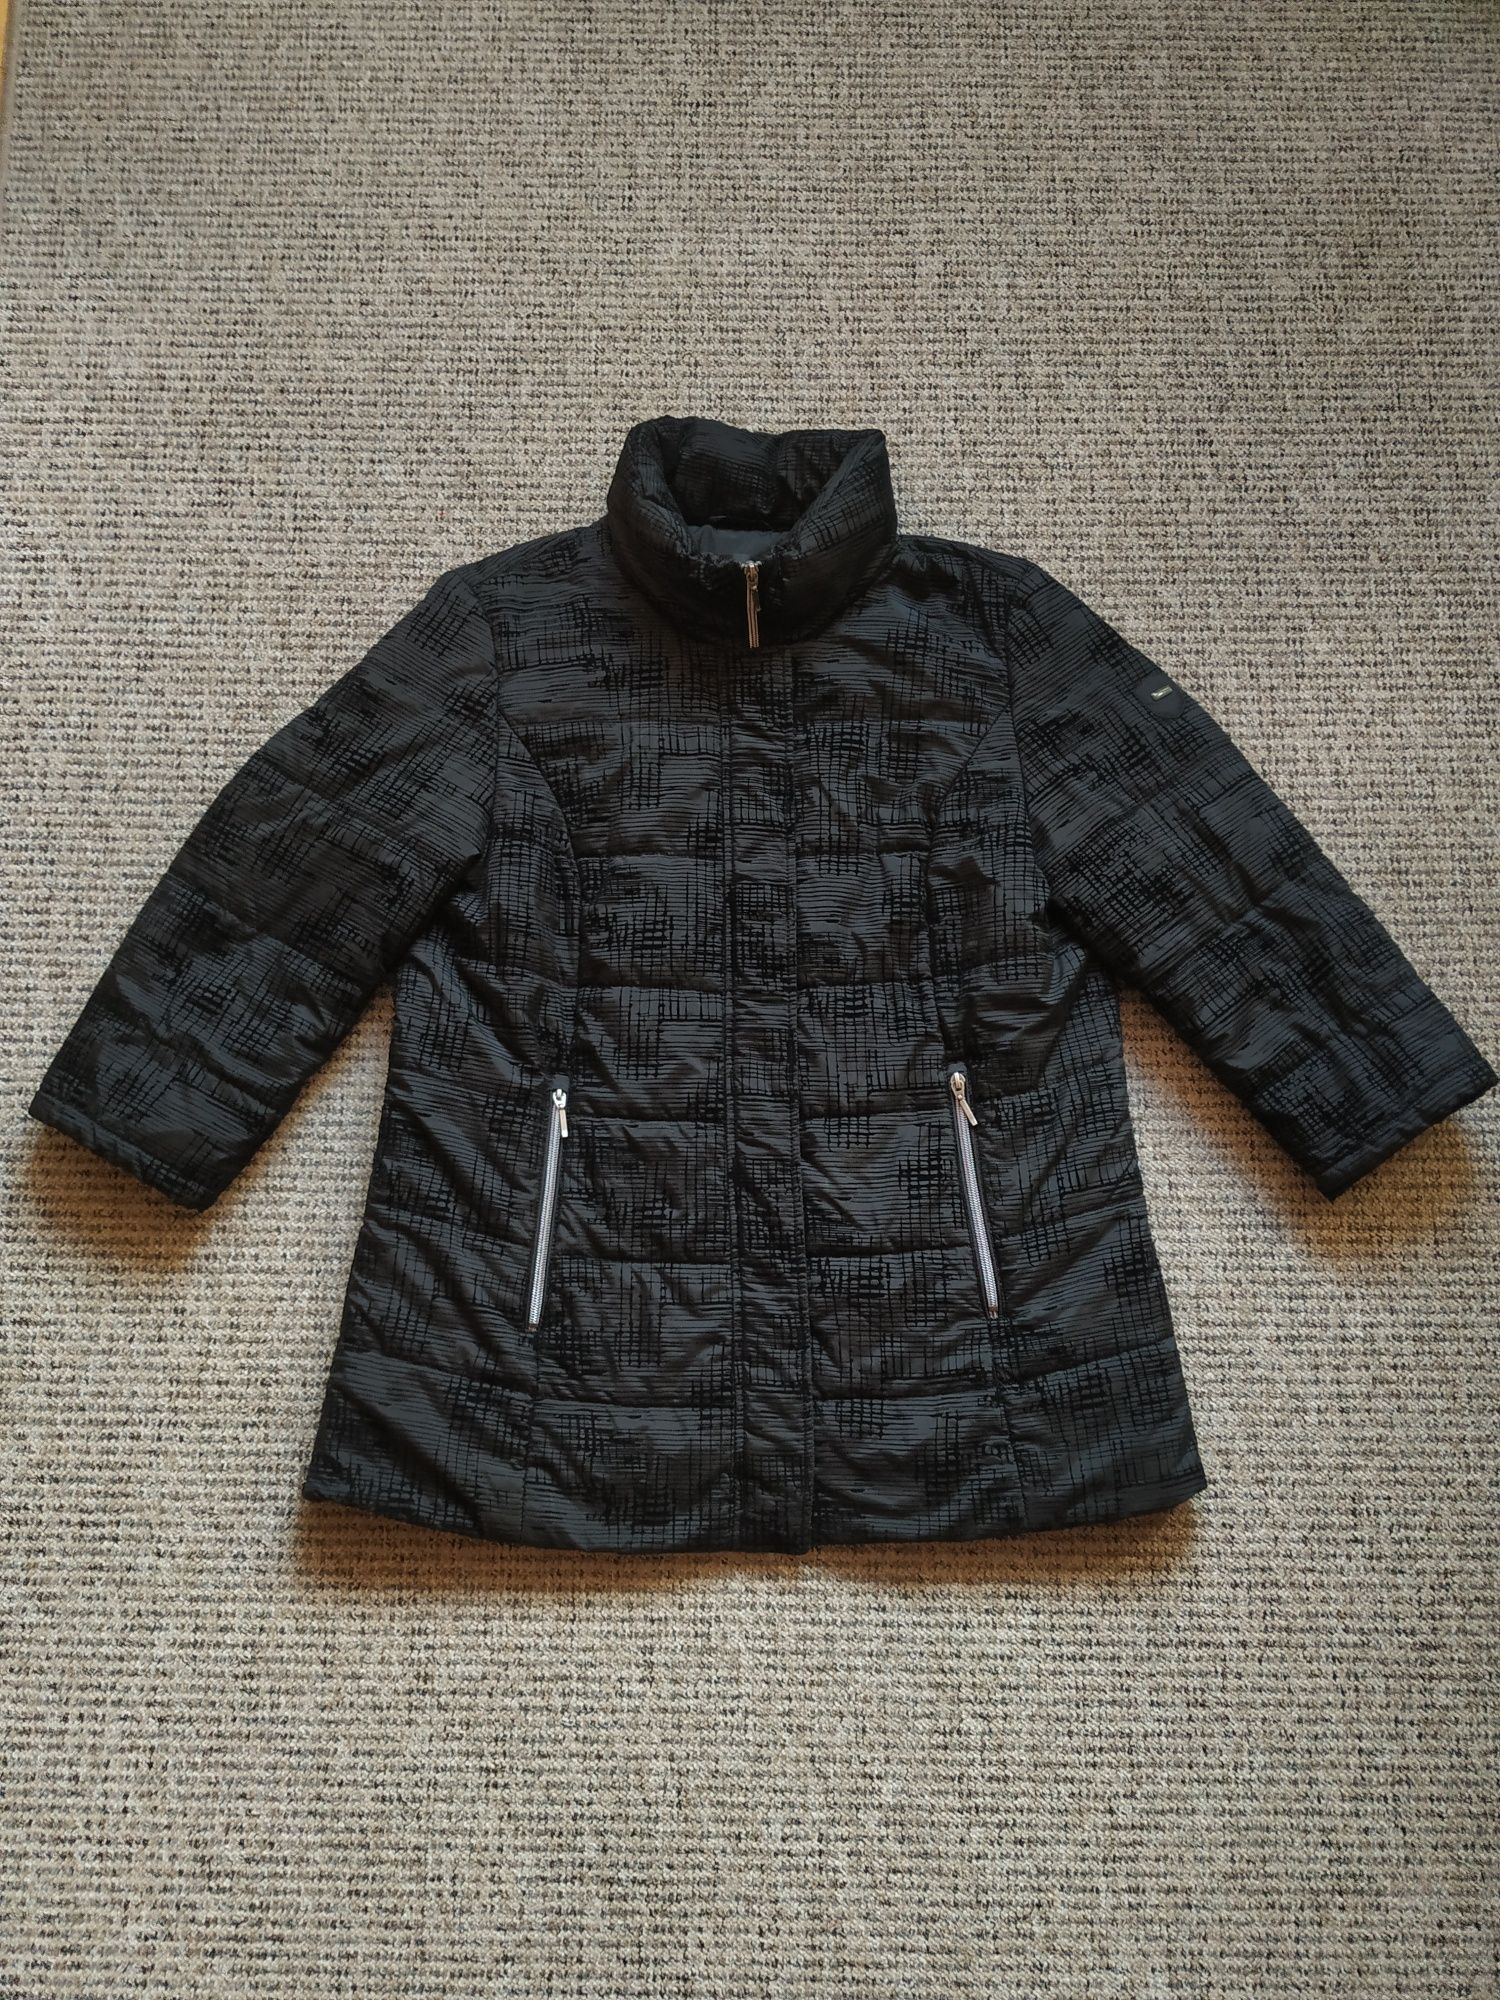 Czarna kurtka zimowa z wytłaczanym wzorem 40 L/42 XL trendy zima